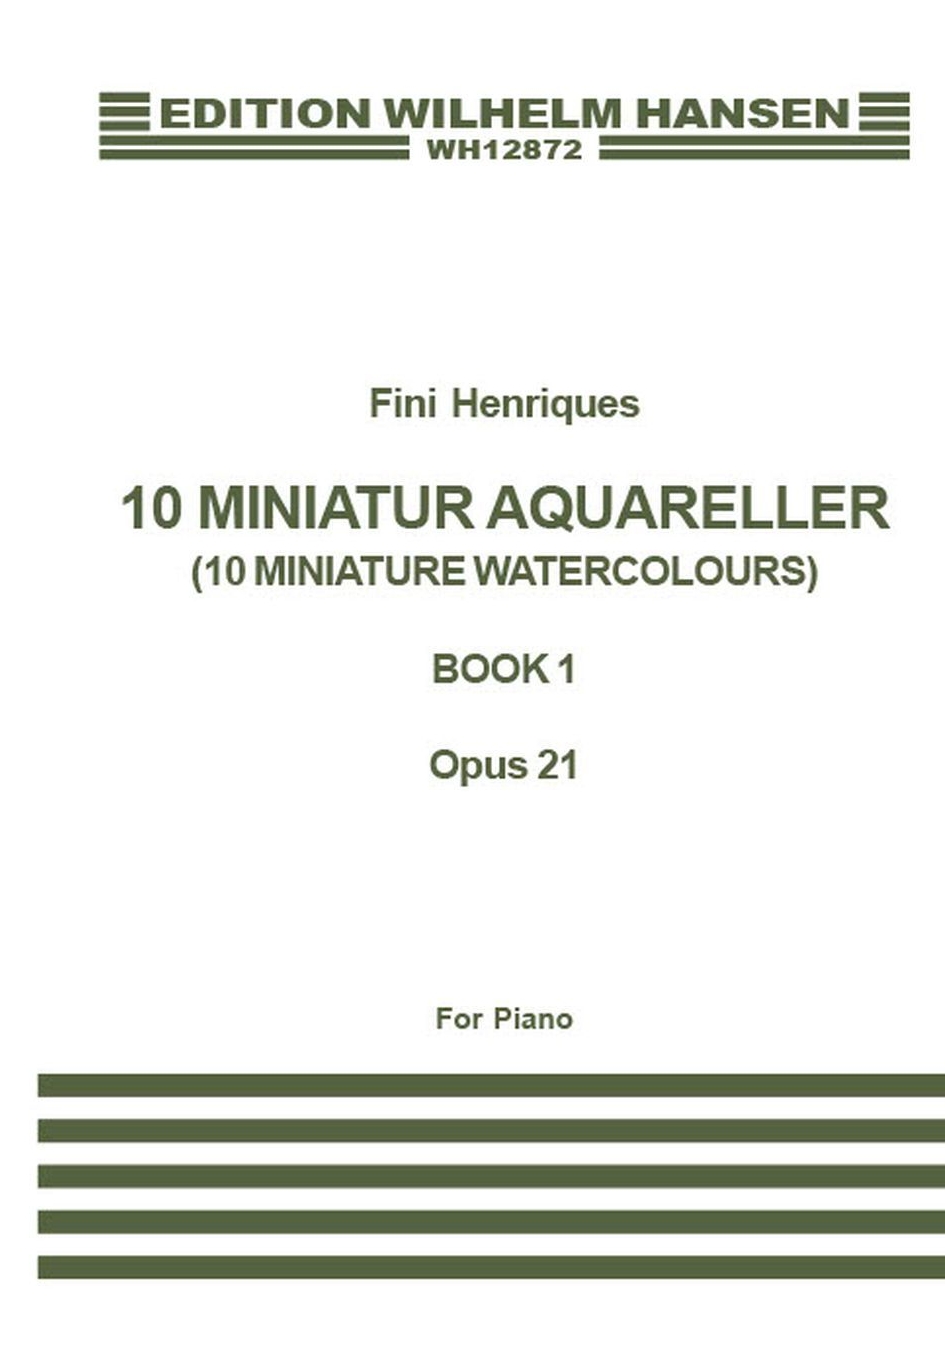 Fini Henriqus: Miniature Aquarelles Op.21 Book 1